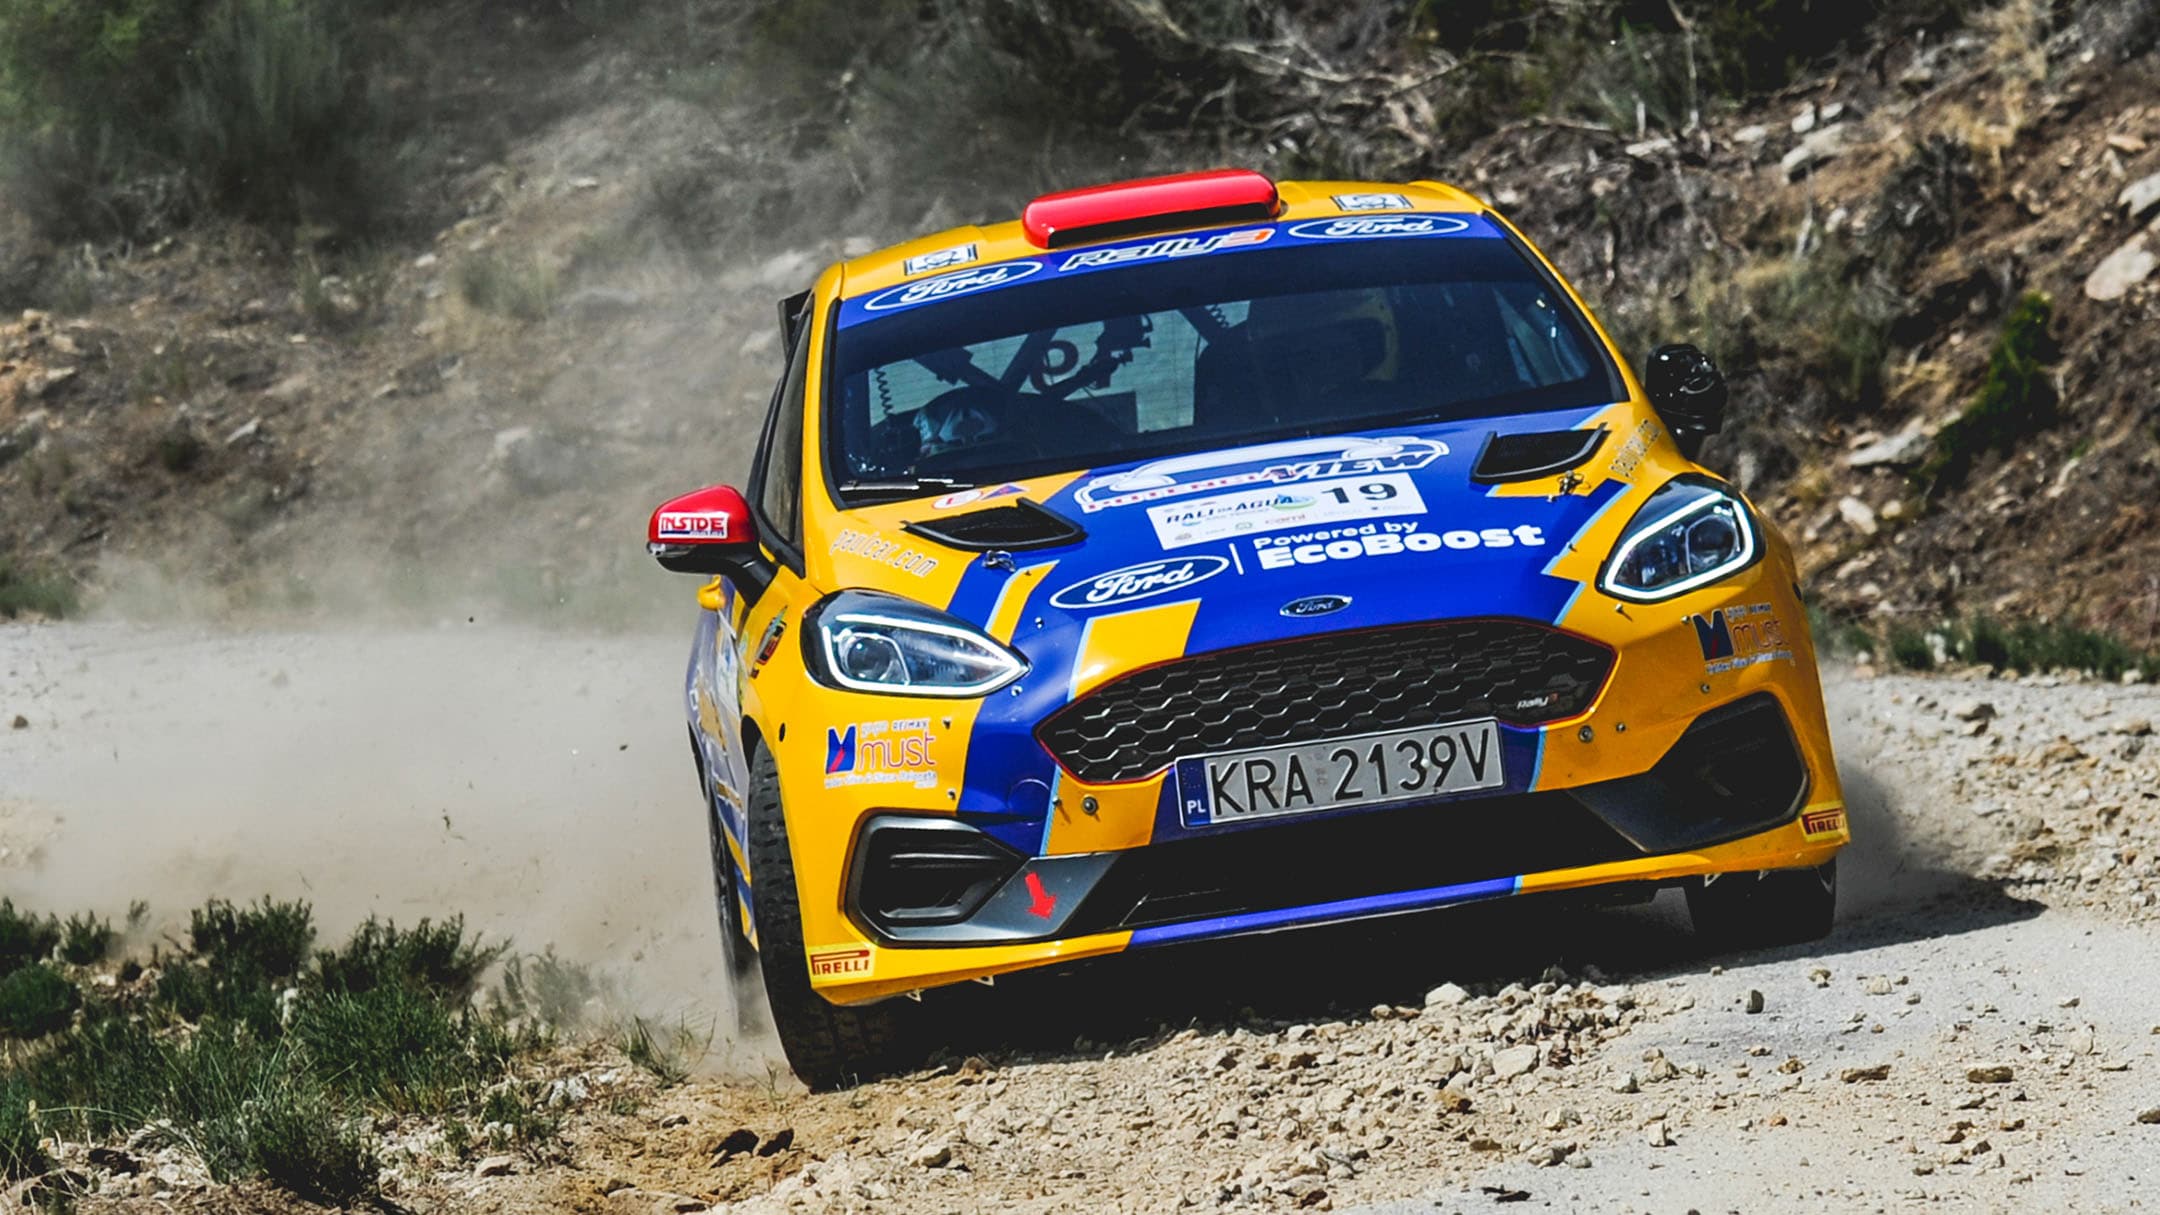 Equipa Ford testa Fiesta Rally3 em prova do FIA ERC: Rally Serras de Fafe e Felgueiras